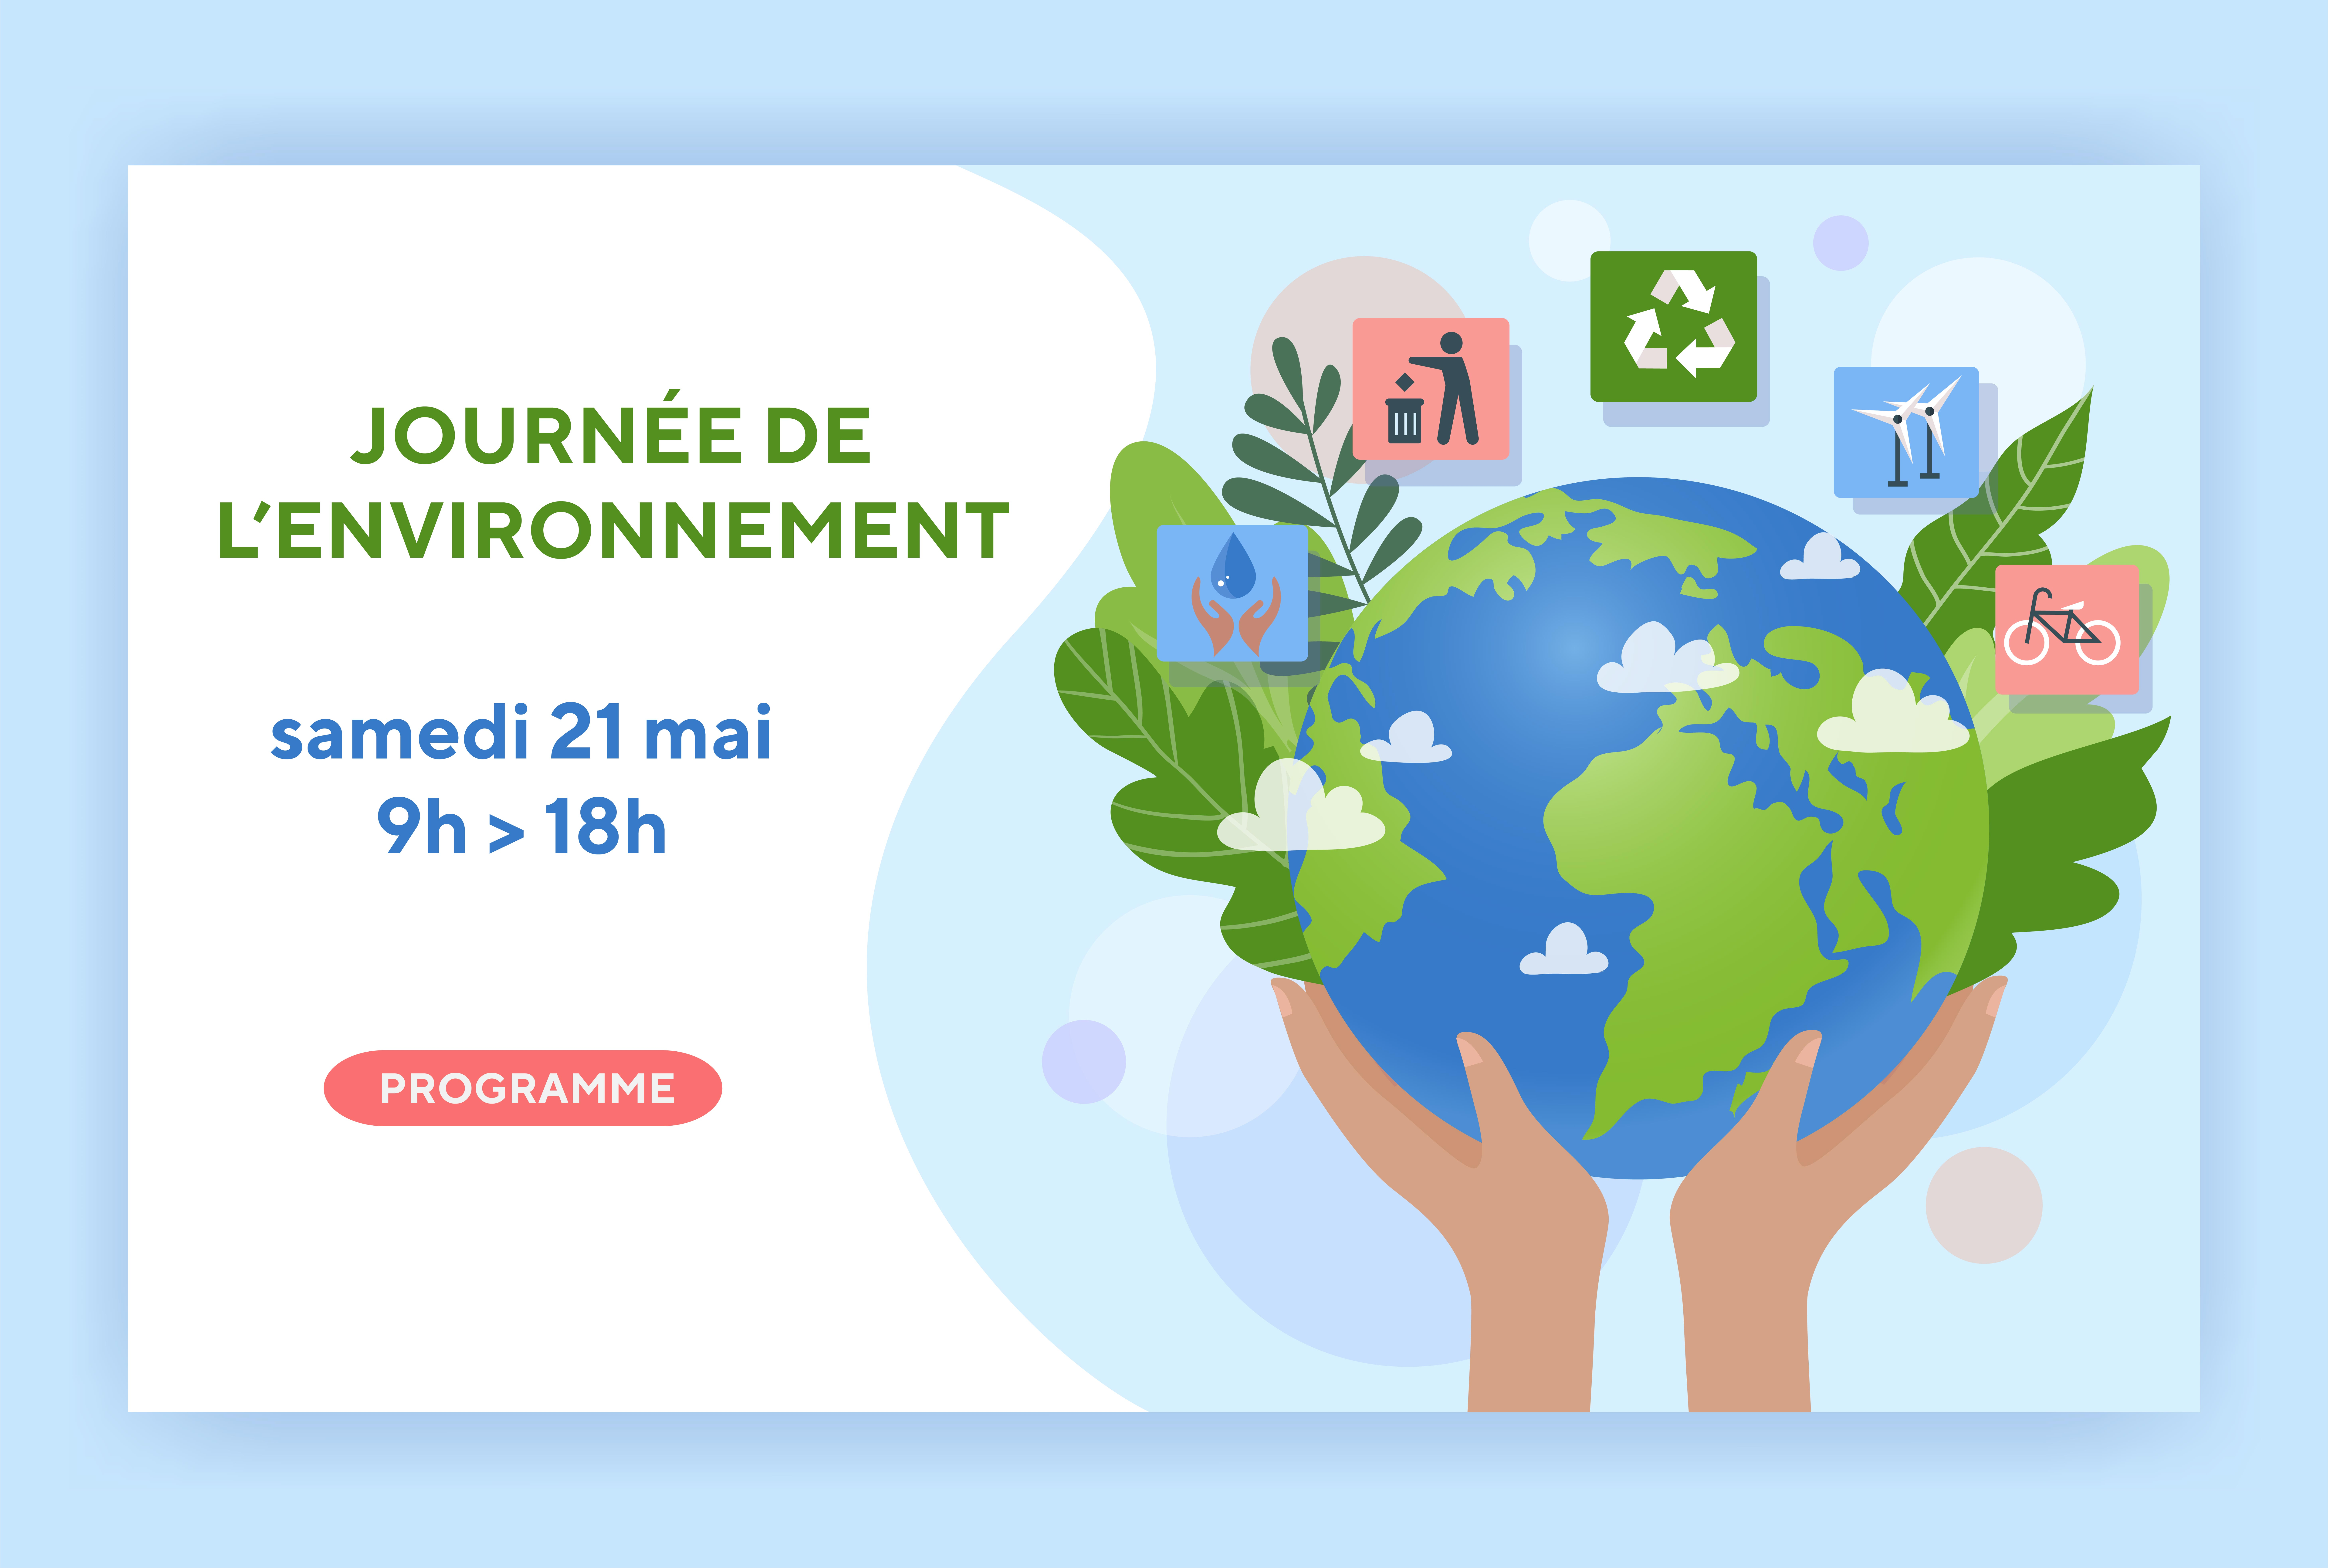 Journée de l’environnement – Samedi 21 mai